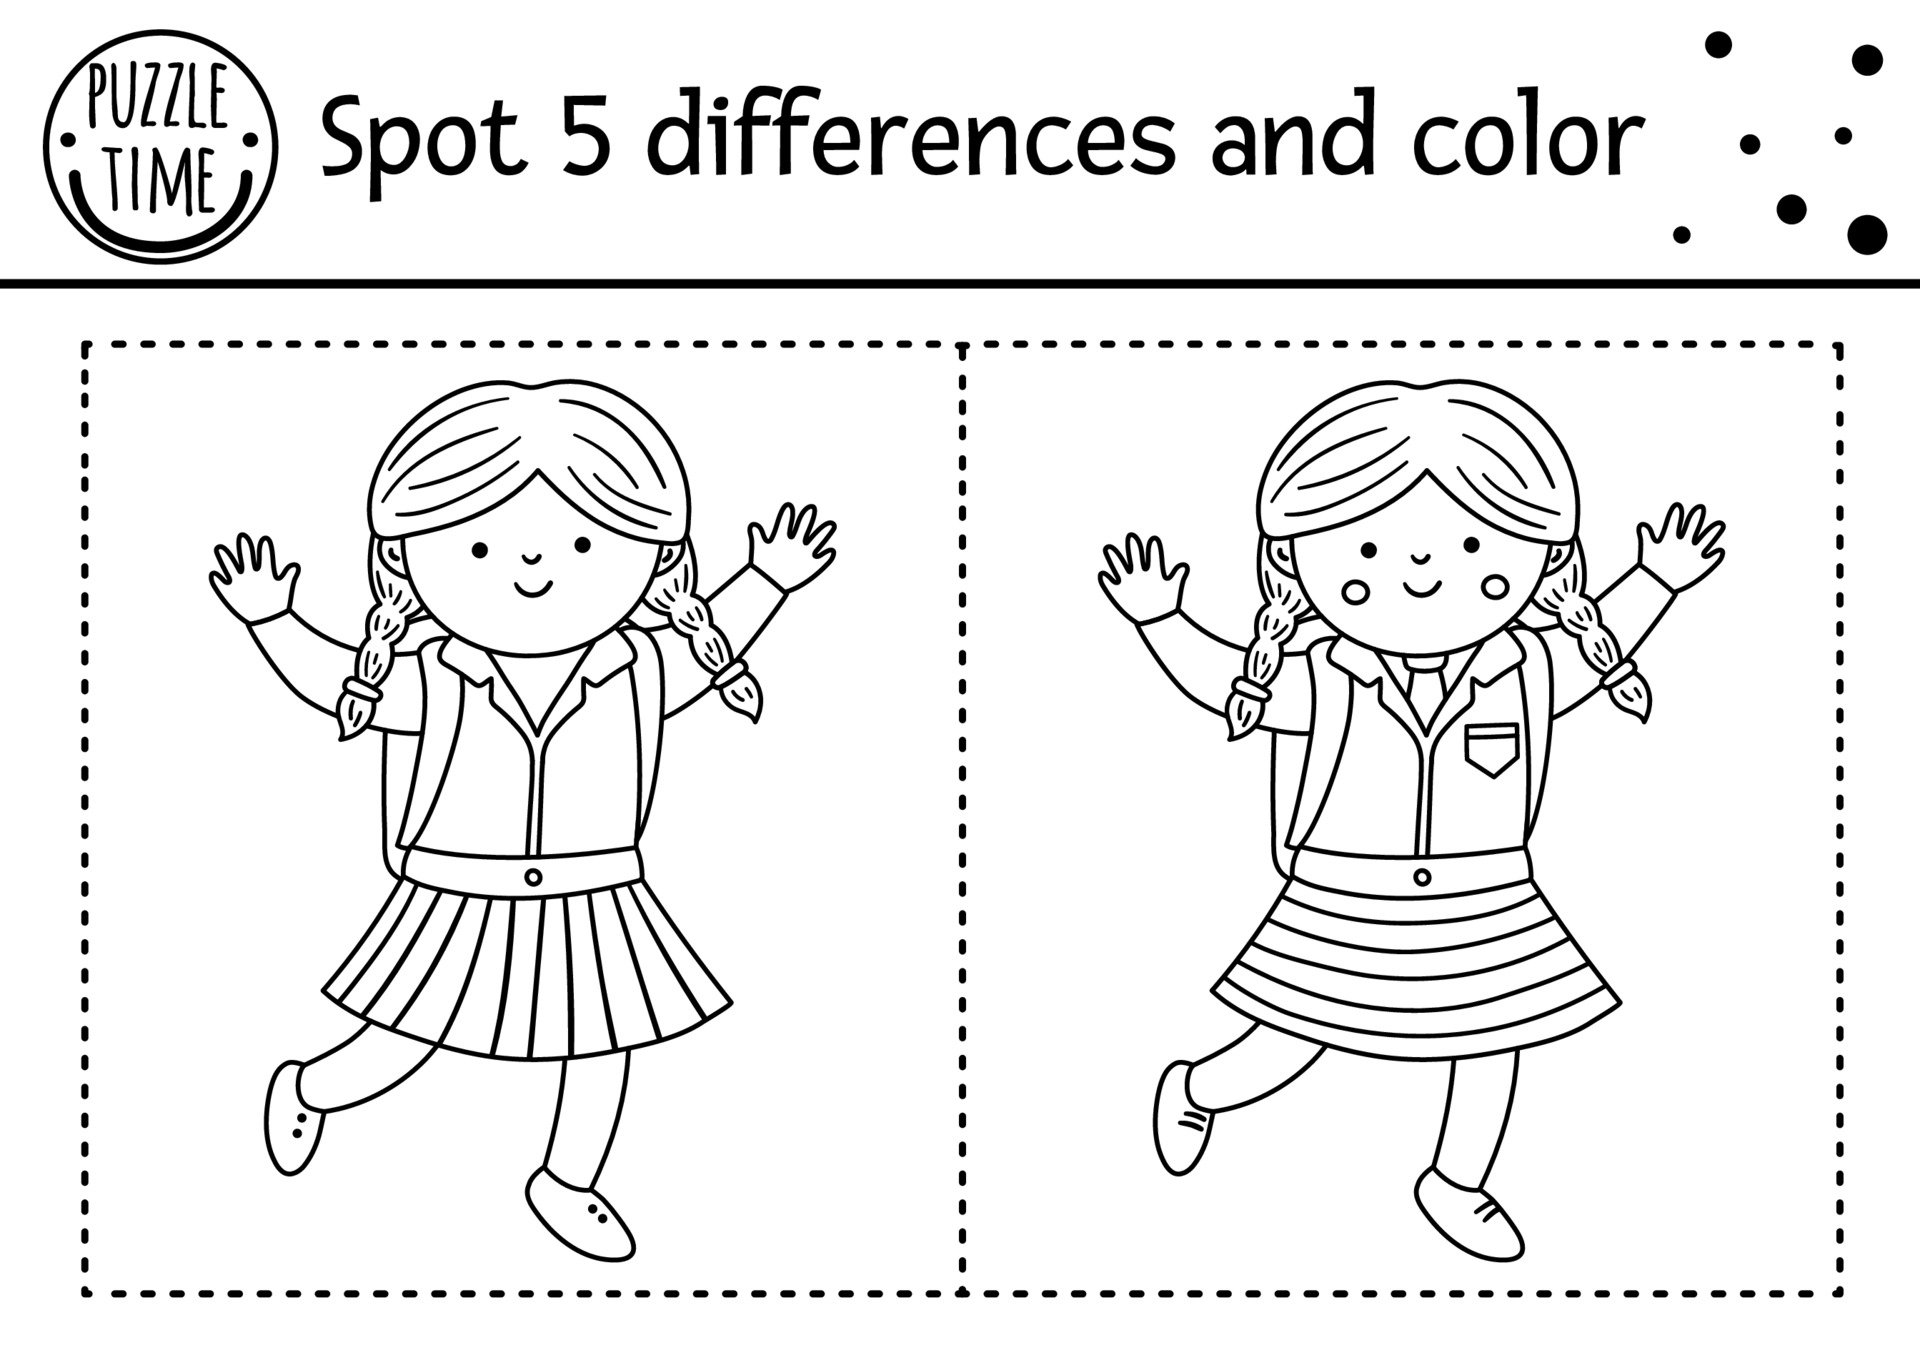 diferenças jogo educacional com robôs para colorir página 1945130